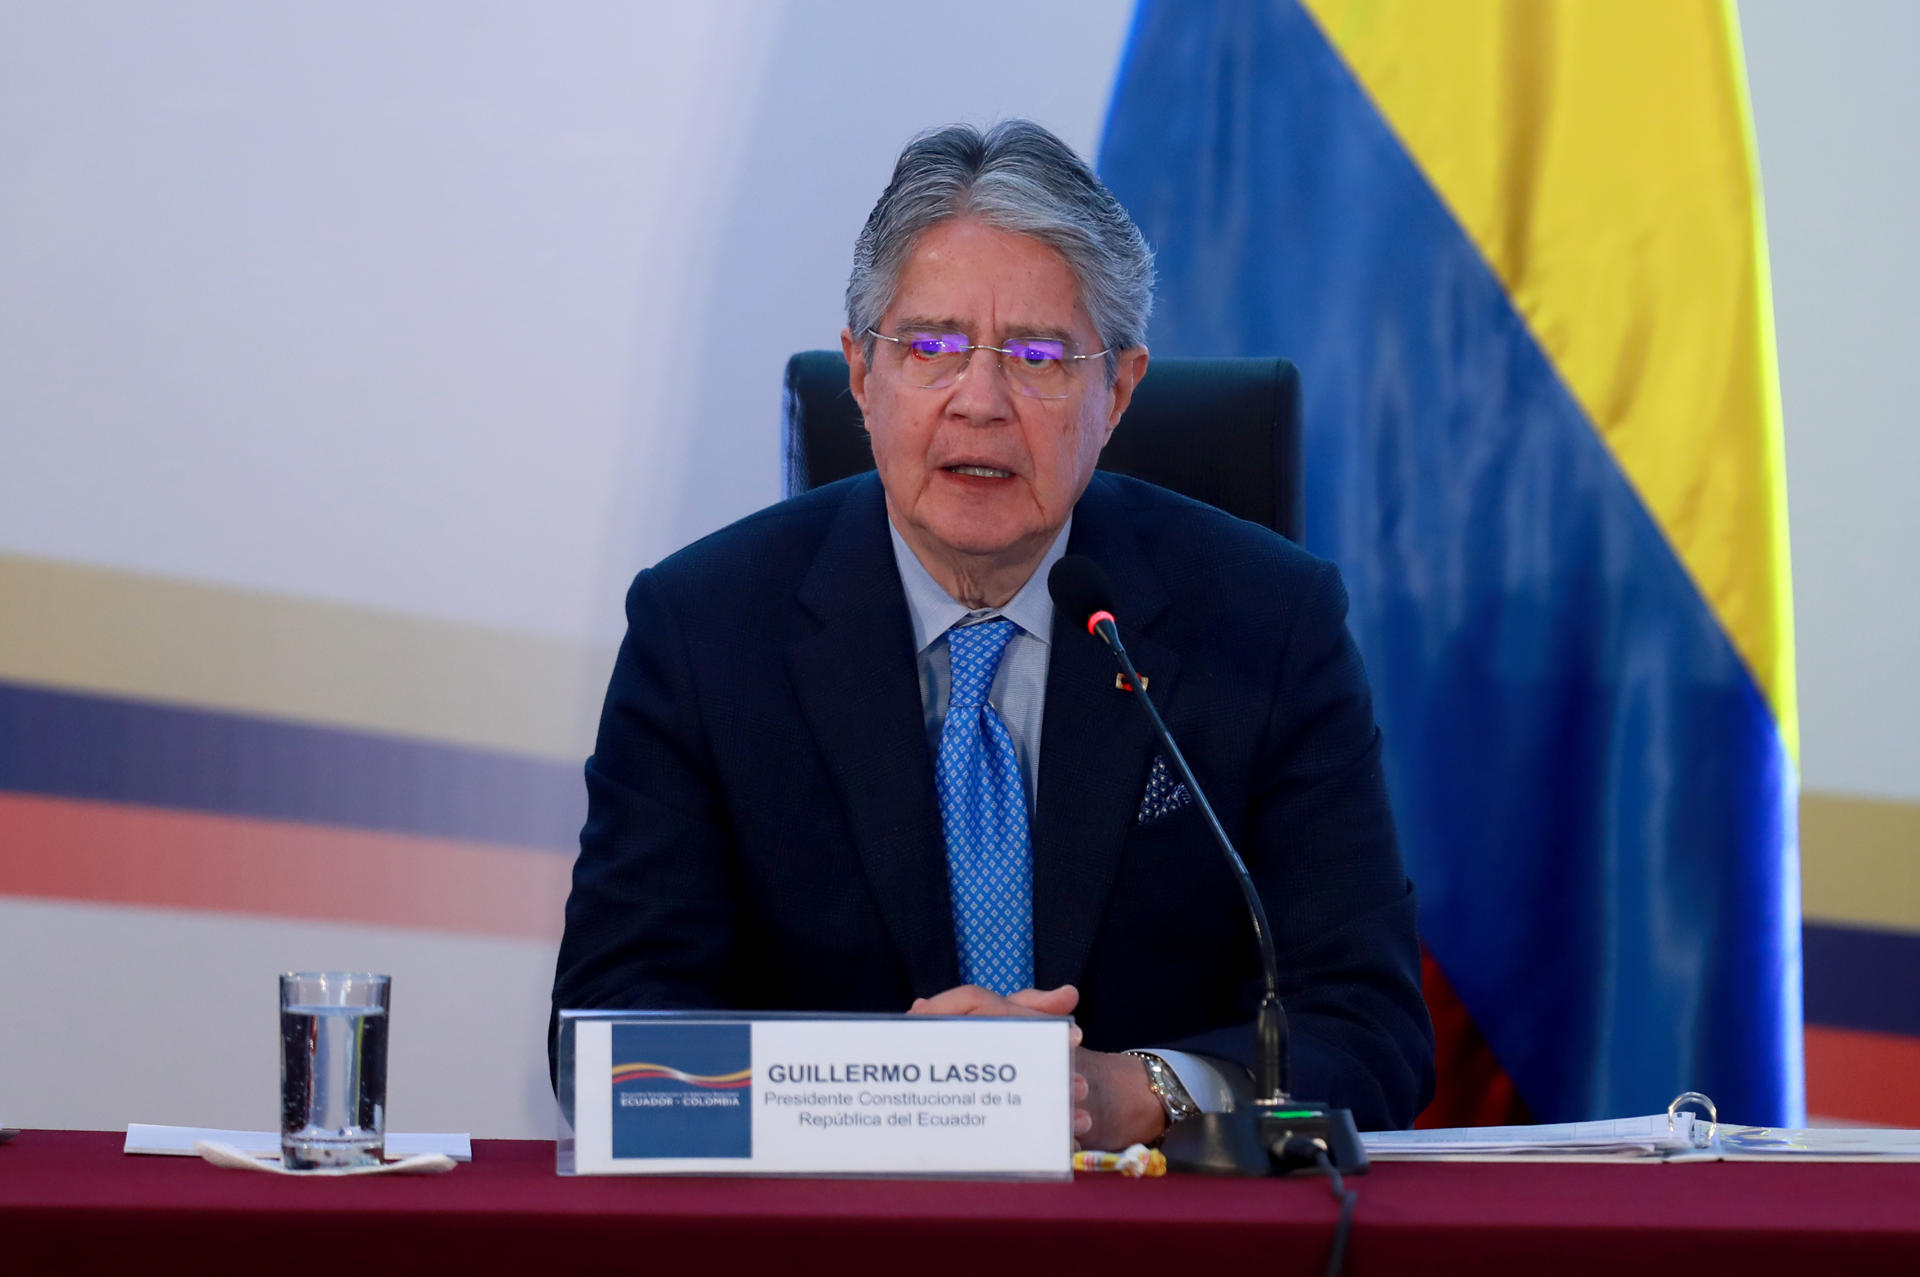 El presidente de Ecuador llama a defender la democracia